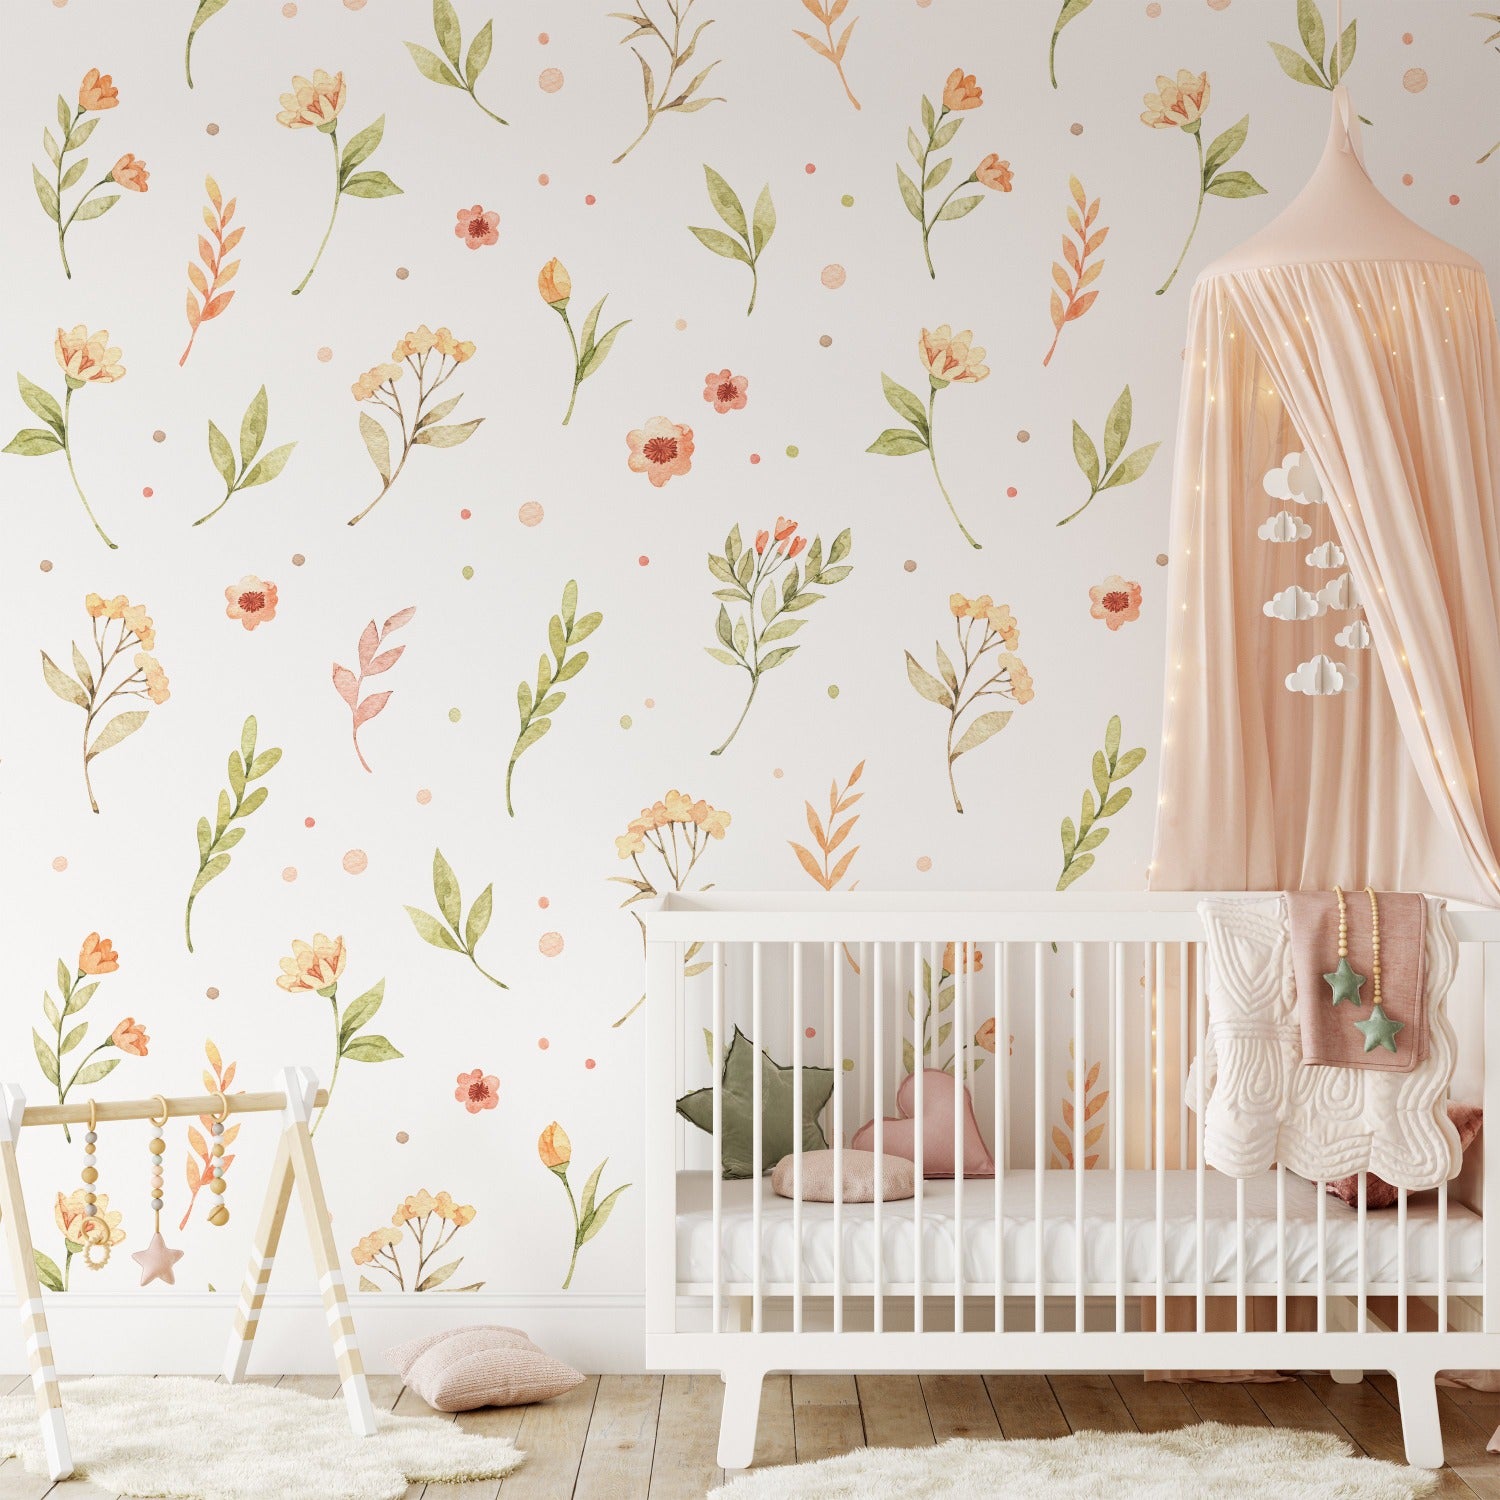 Wallpaper for Nursery Bedroom Walls  Wallflorashopcom